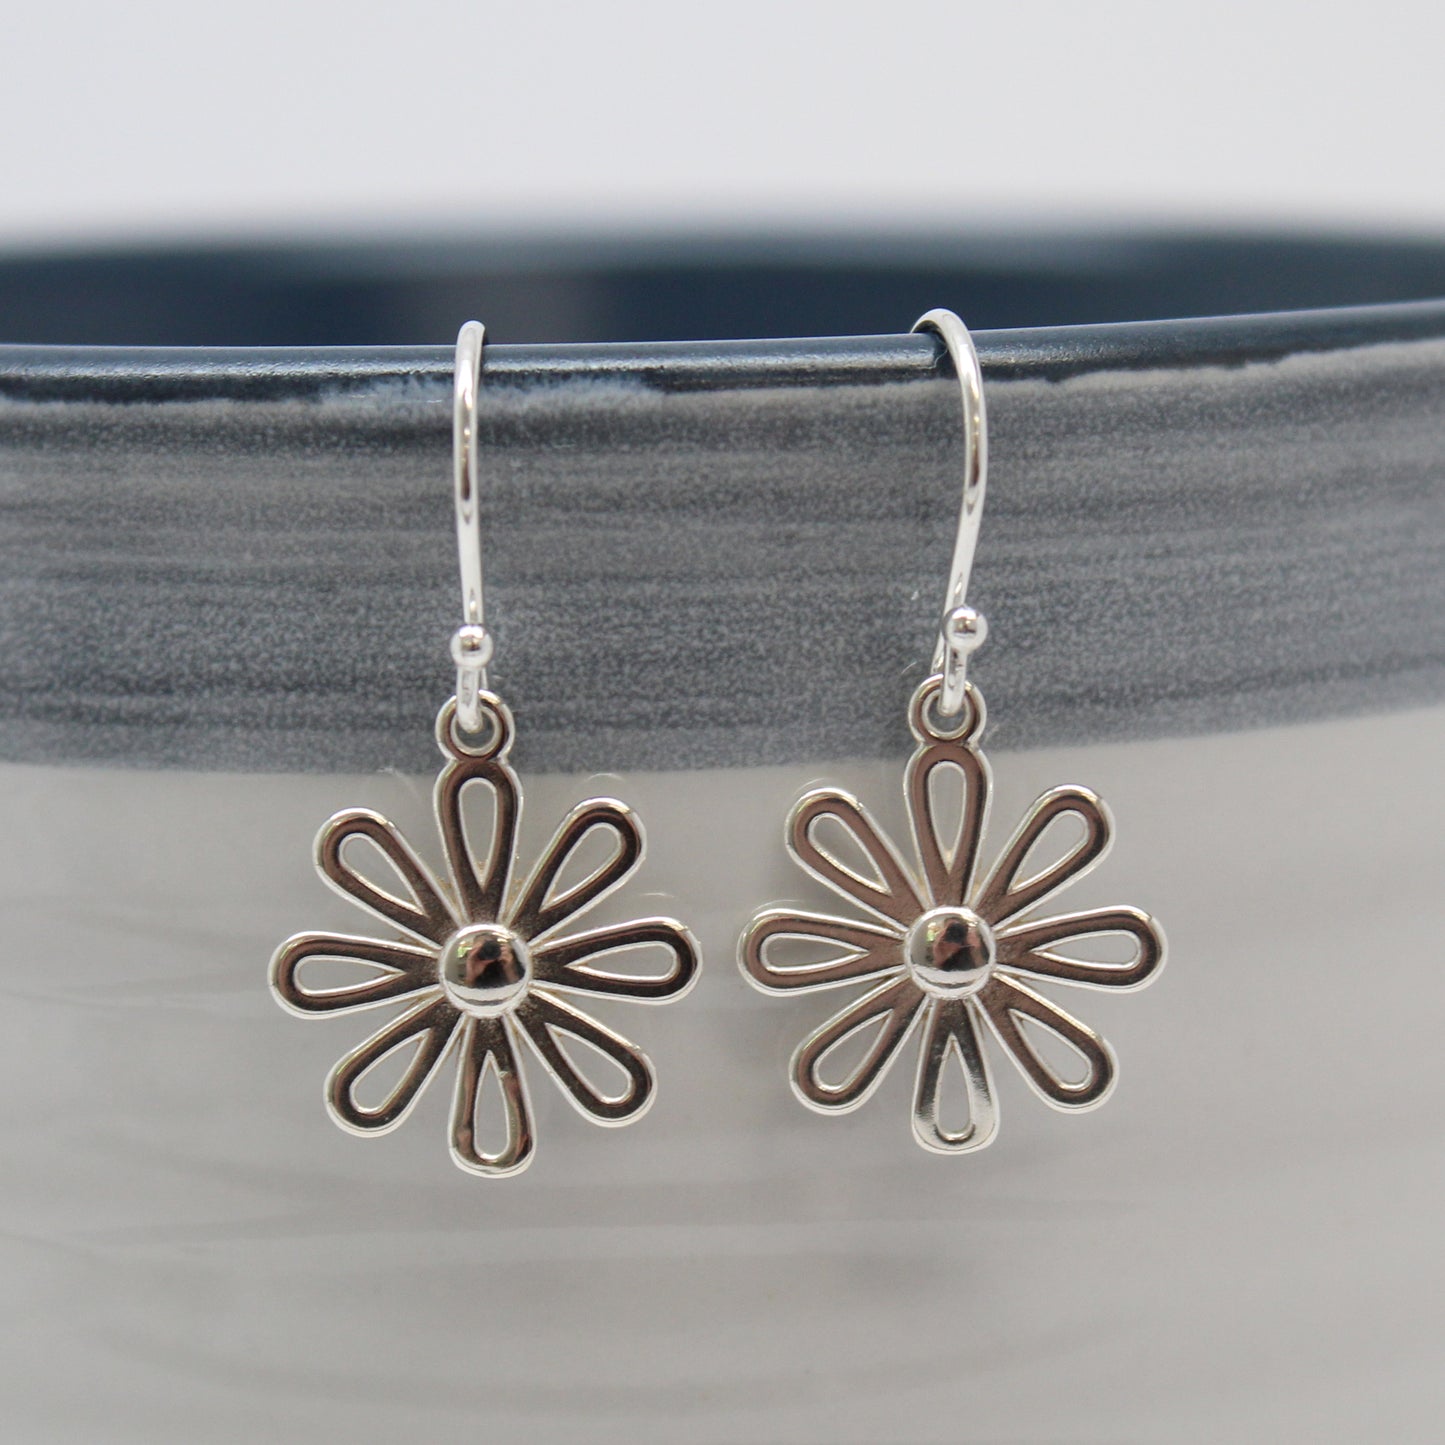 Little Sterling Silver Flower Earrings